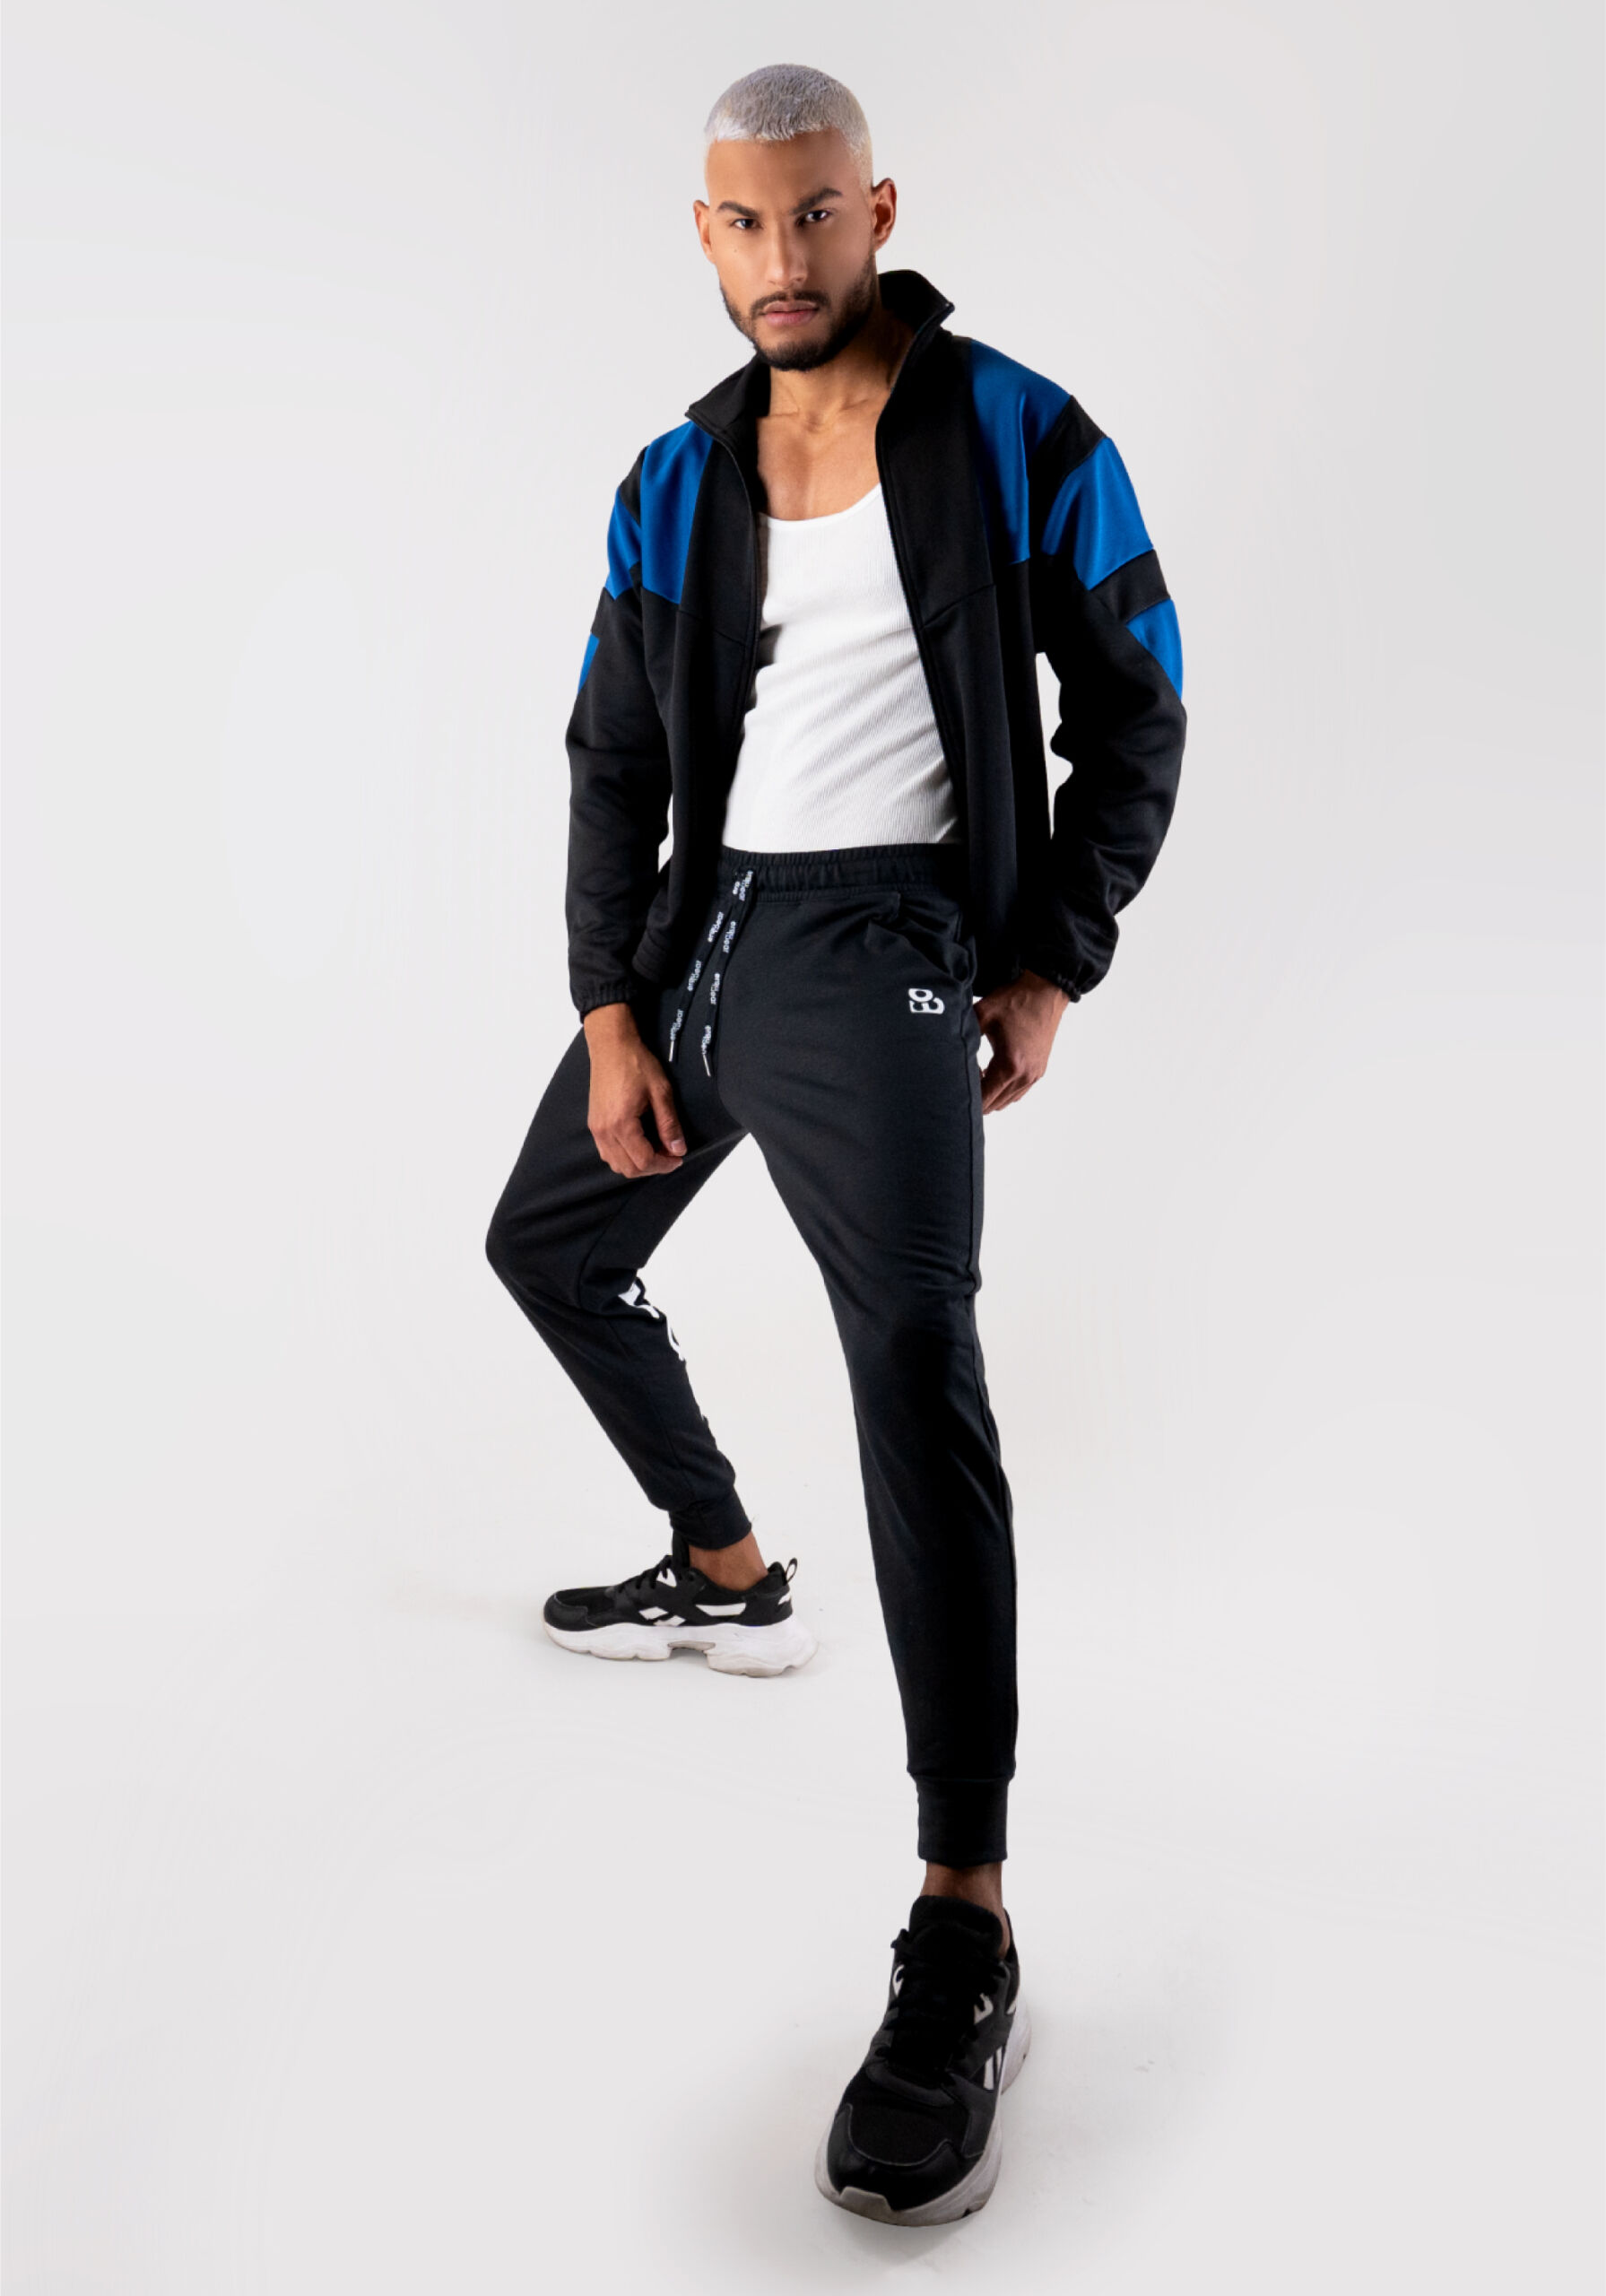 Men's Black Joggers for GYM | Men's Activewear - Ergowear